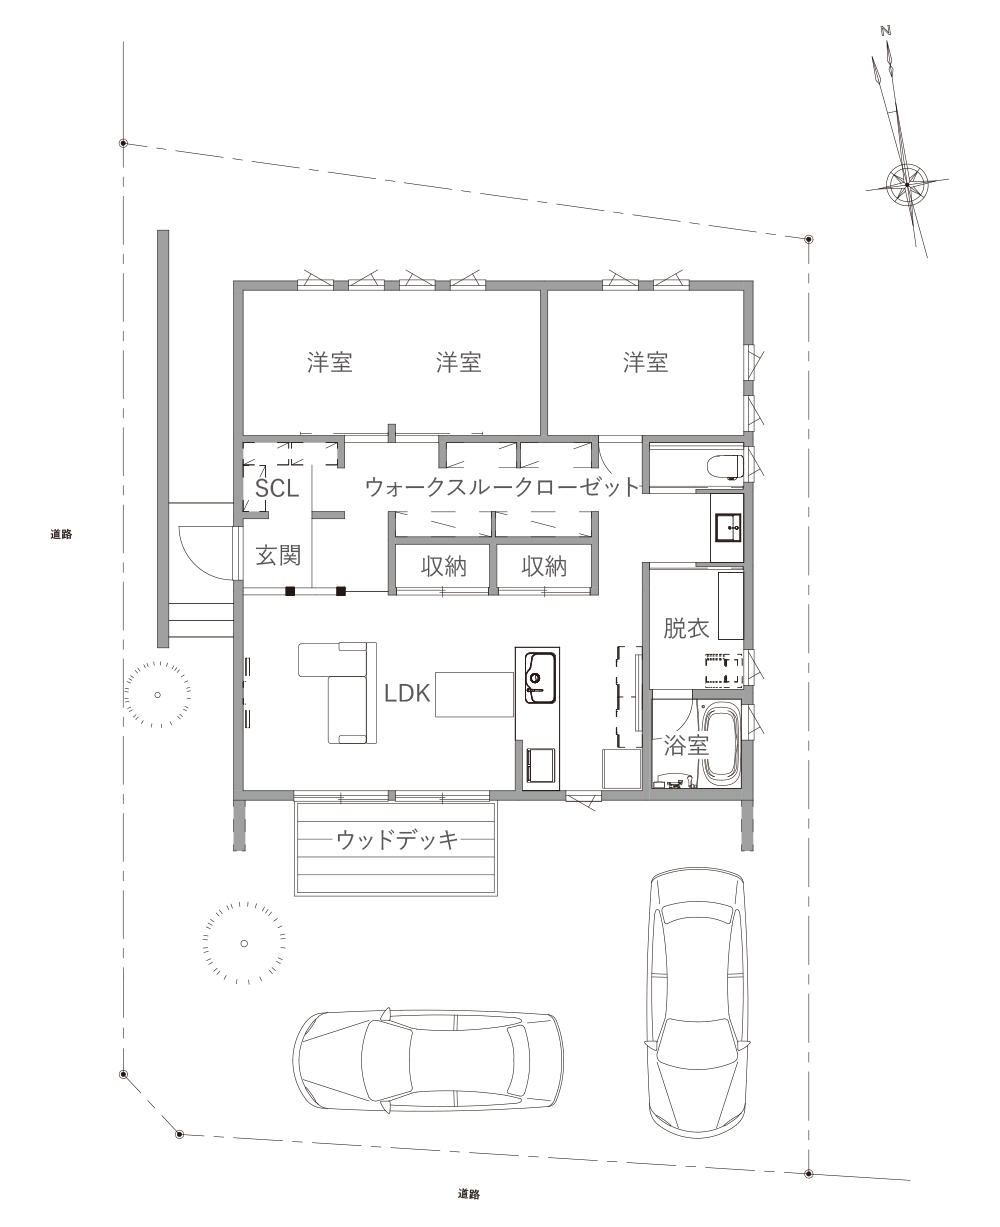 ハウスクラフト分譲住宅 コンパクトな平屋の間取り図 26坪